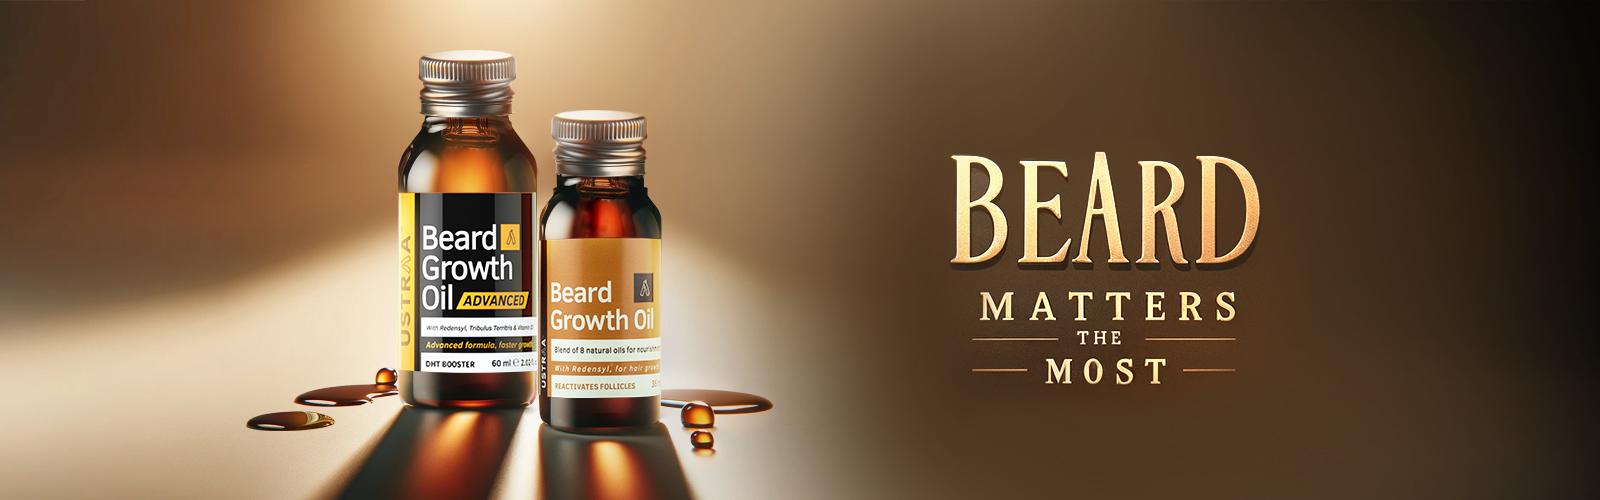 Beard growth oil 1